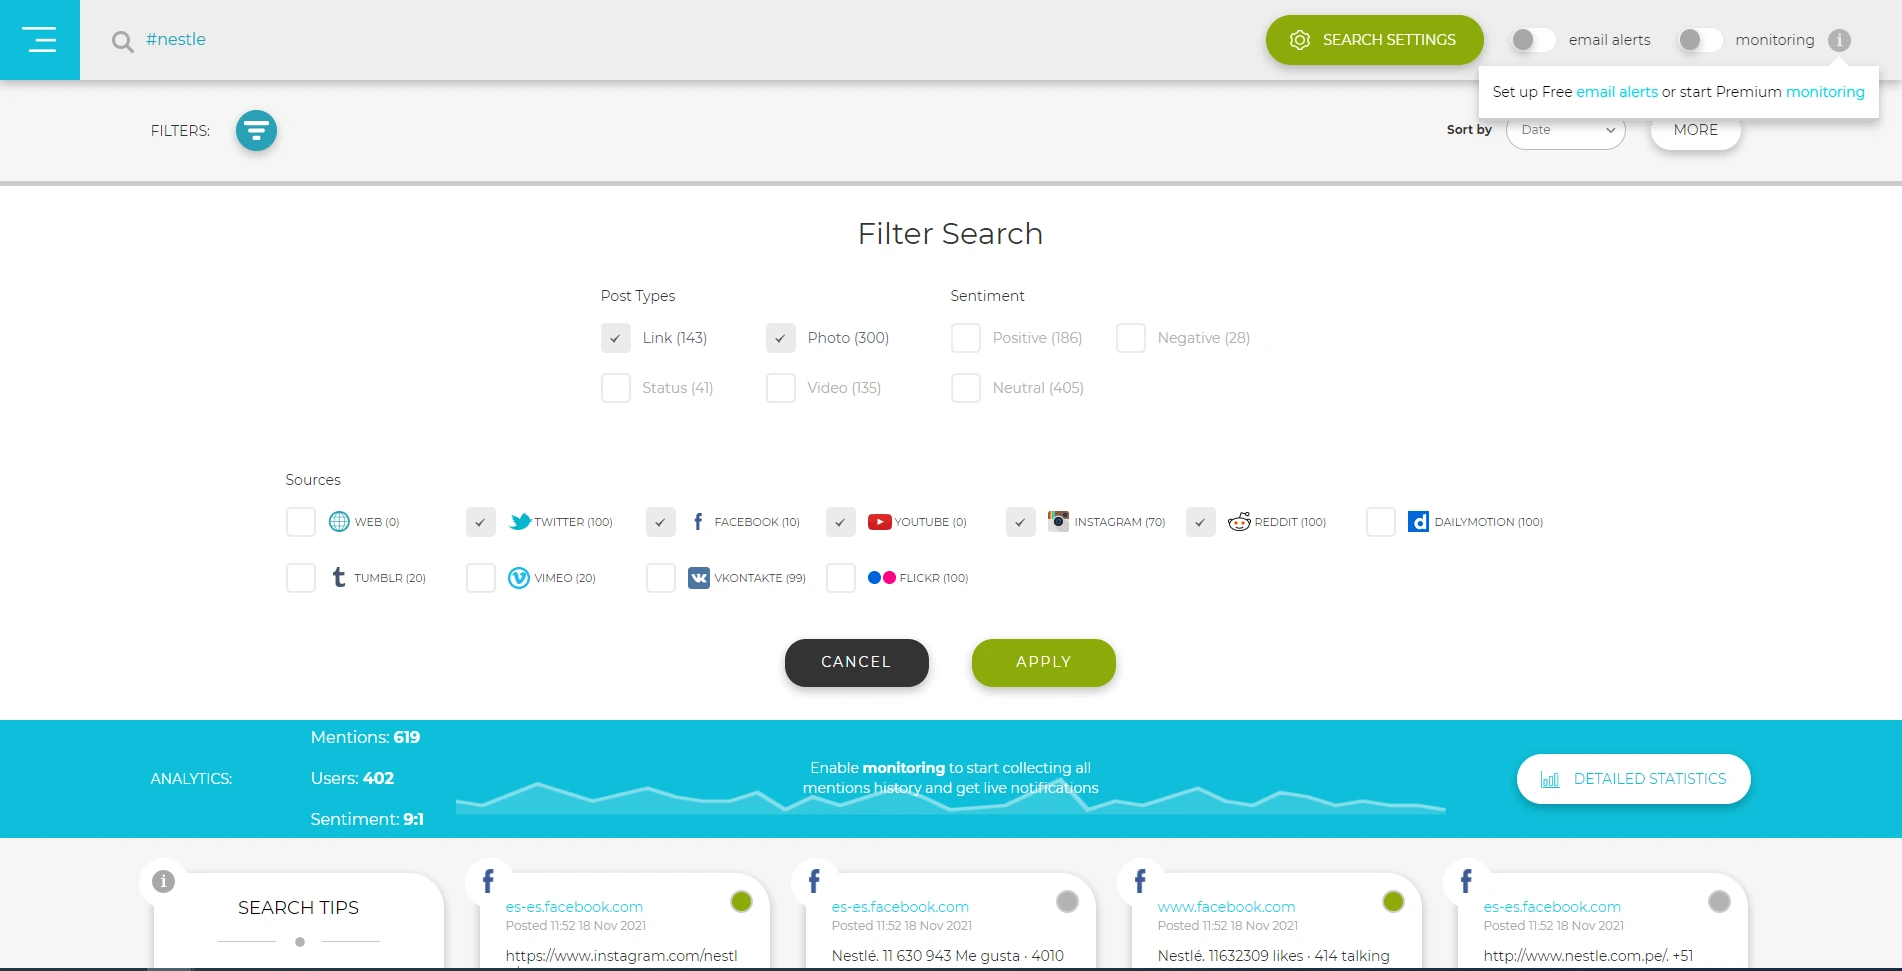 Social Searcher interface